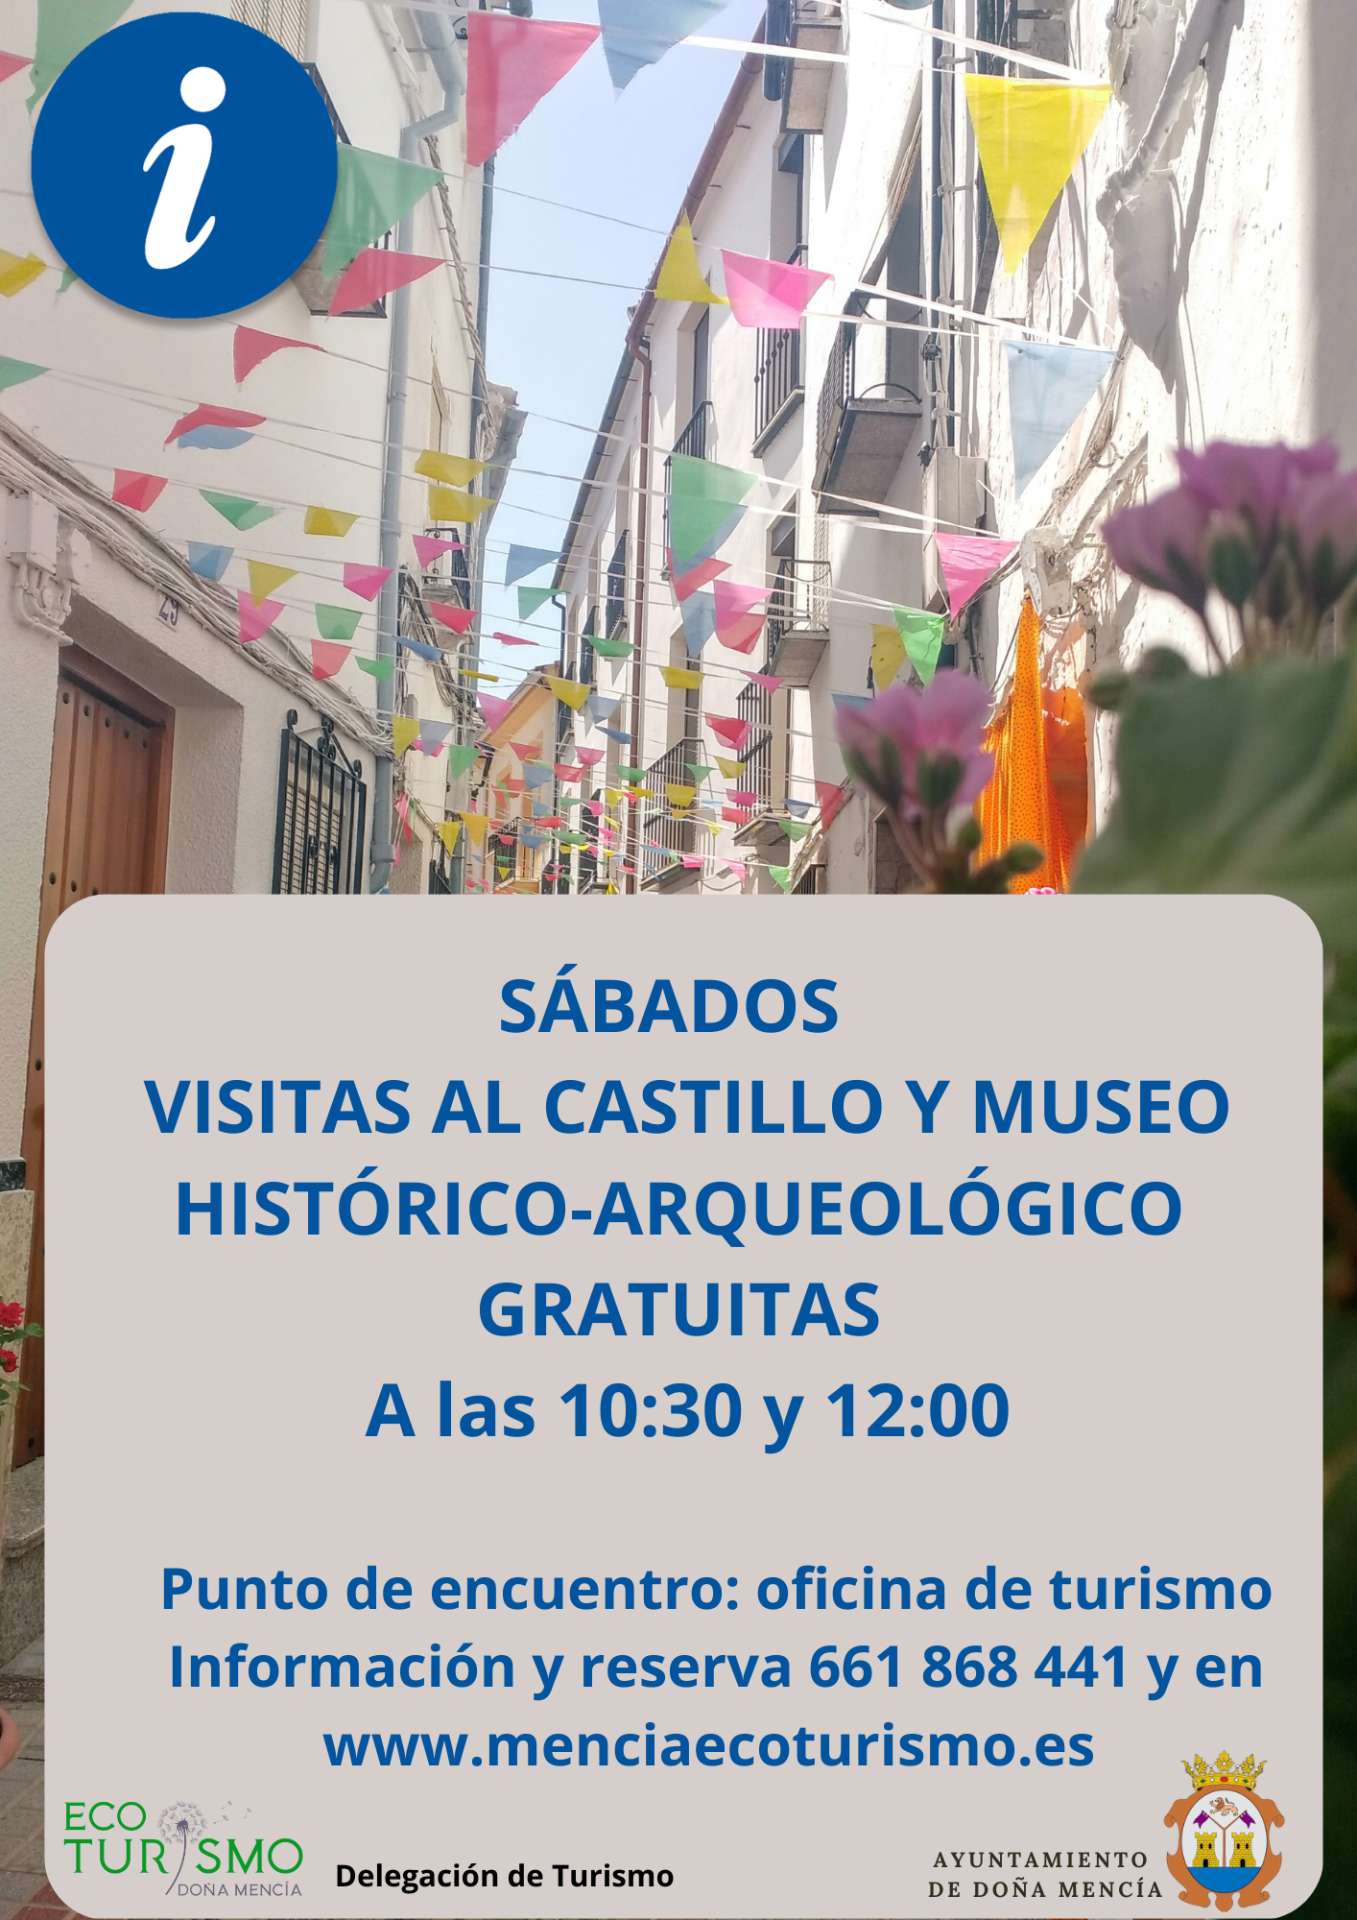 Sábados visitas gratuitas al Castillo y Museo Histórico-Arqueológico